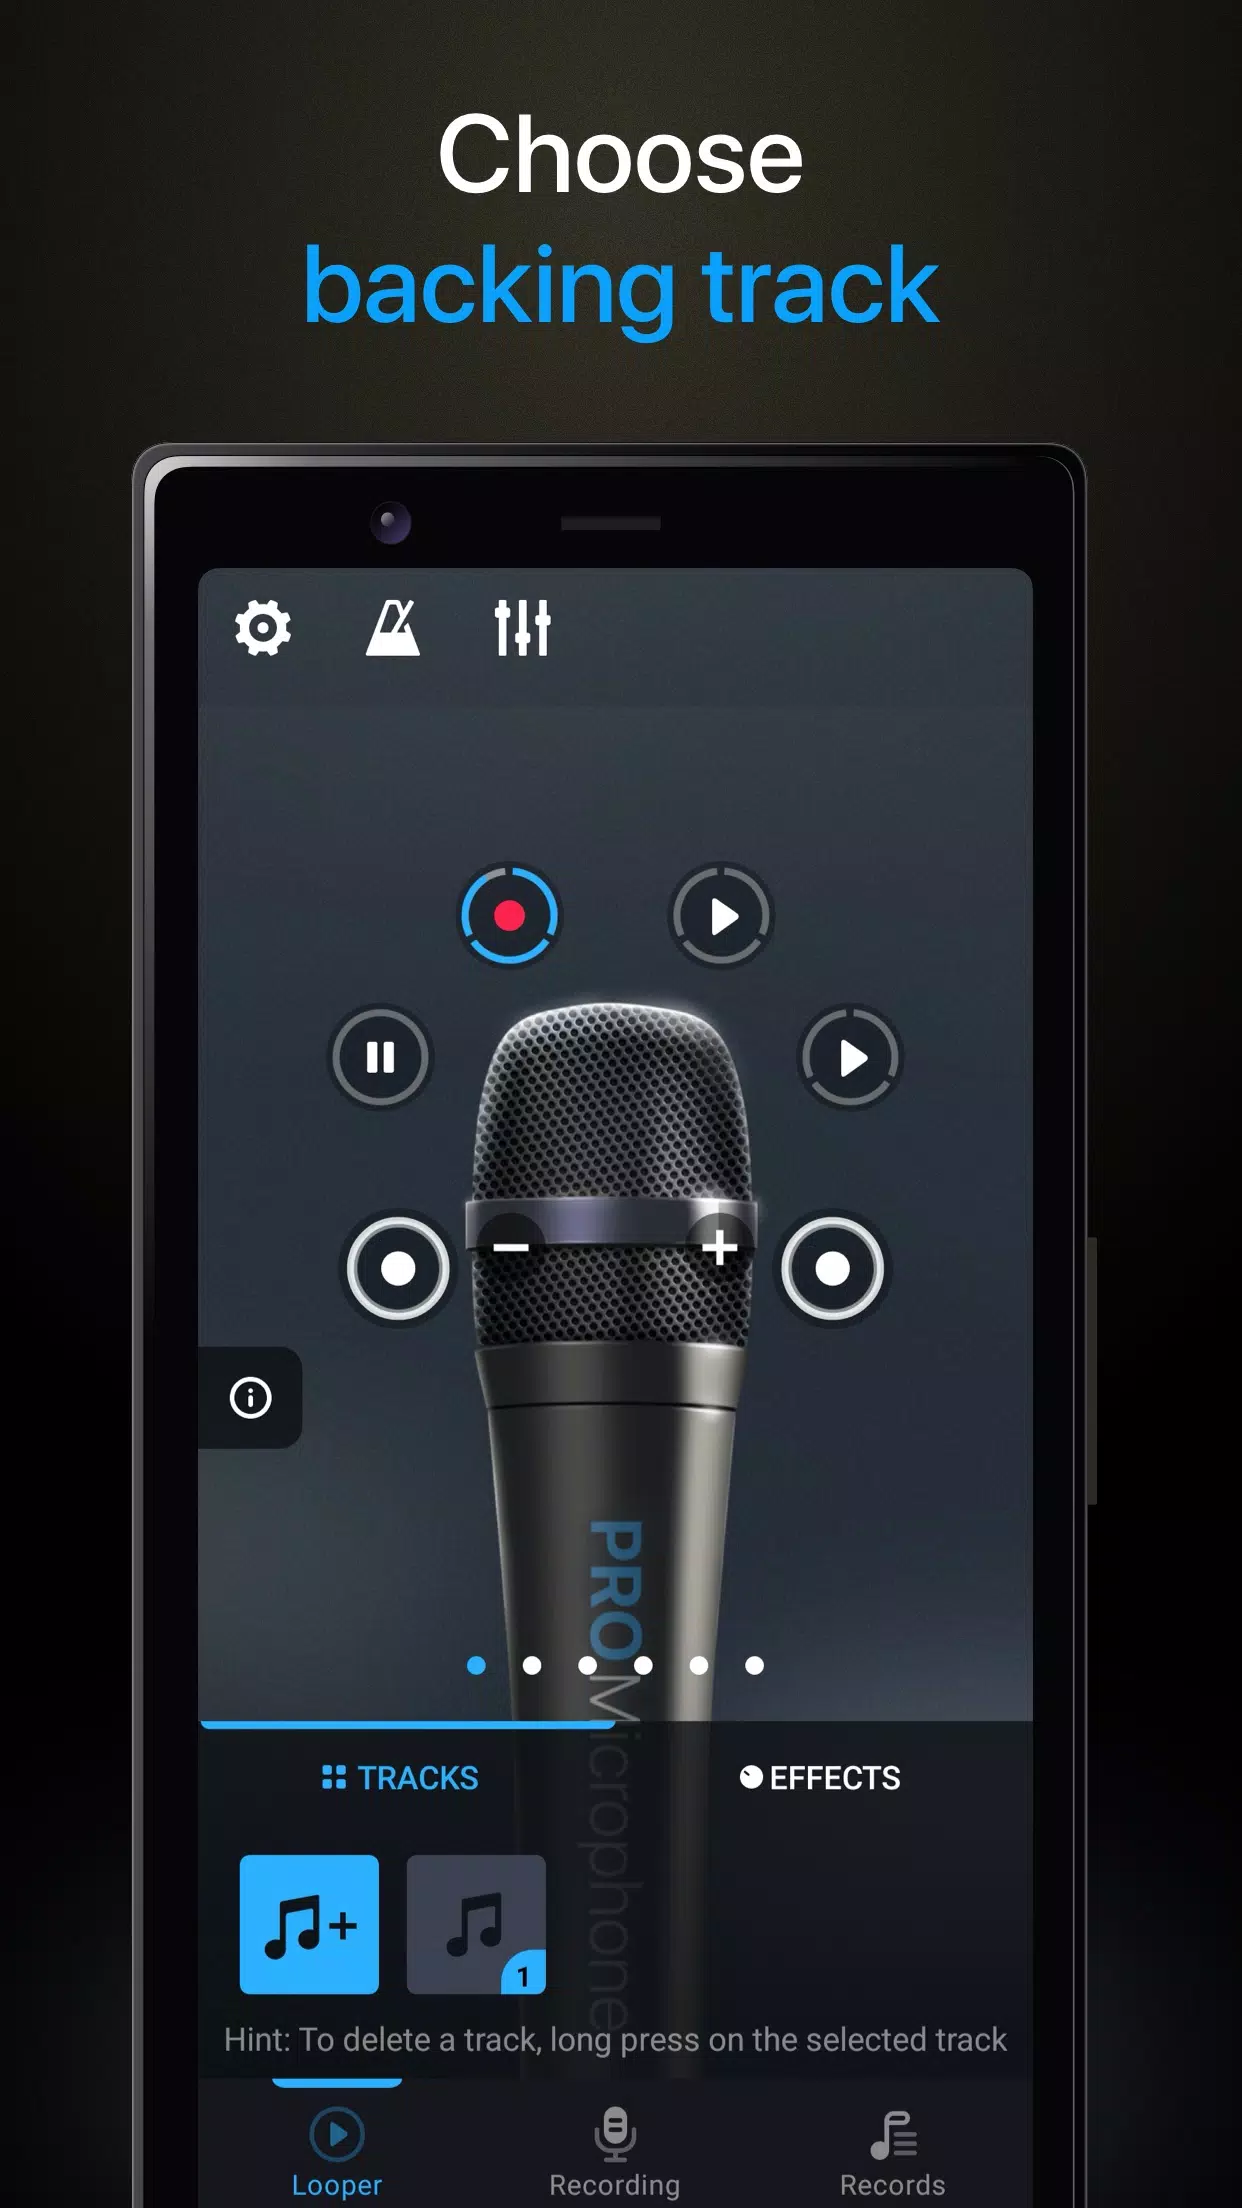 Microphone Pro No delay APK para Android - Download